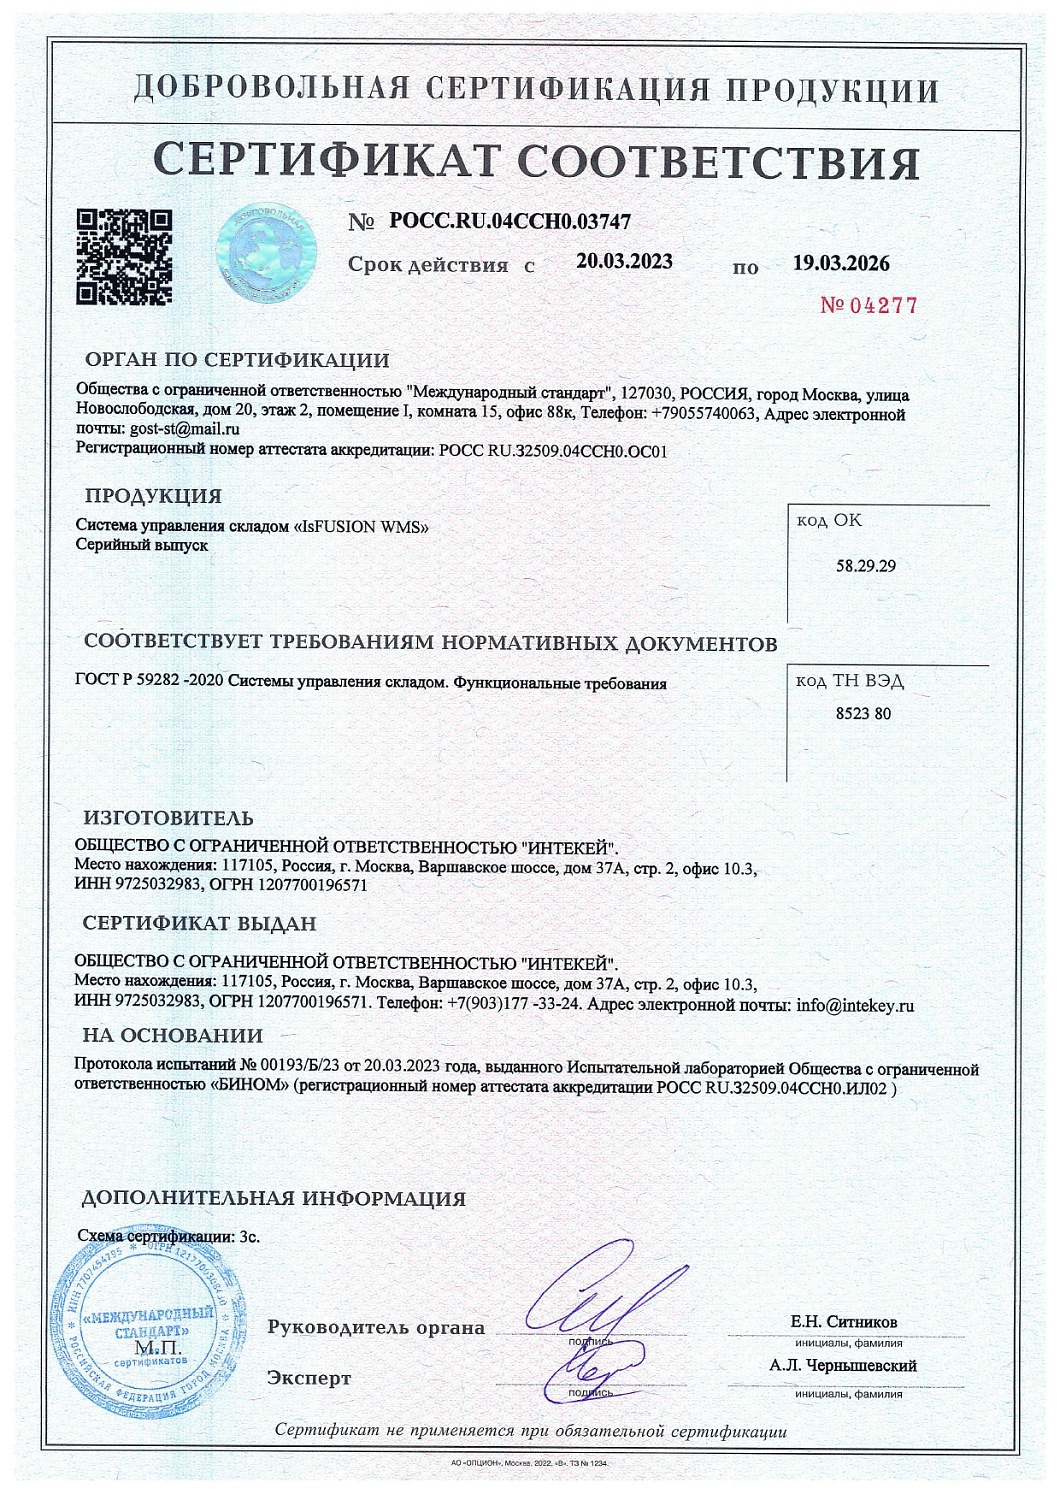 Компания INTEKEY получила сертификат соответствия национальному стандарту России ГОСТ Р 59282-2020 "Системы управления складом"